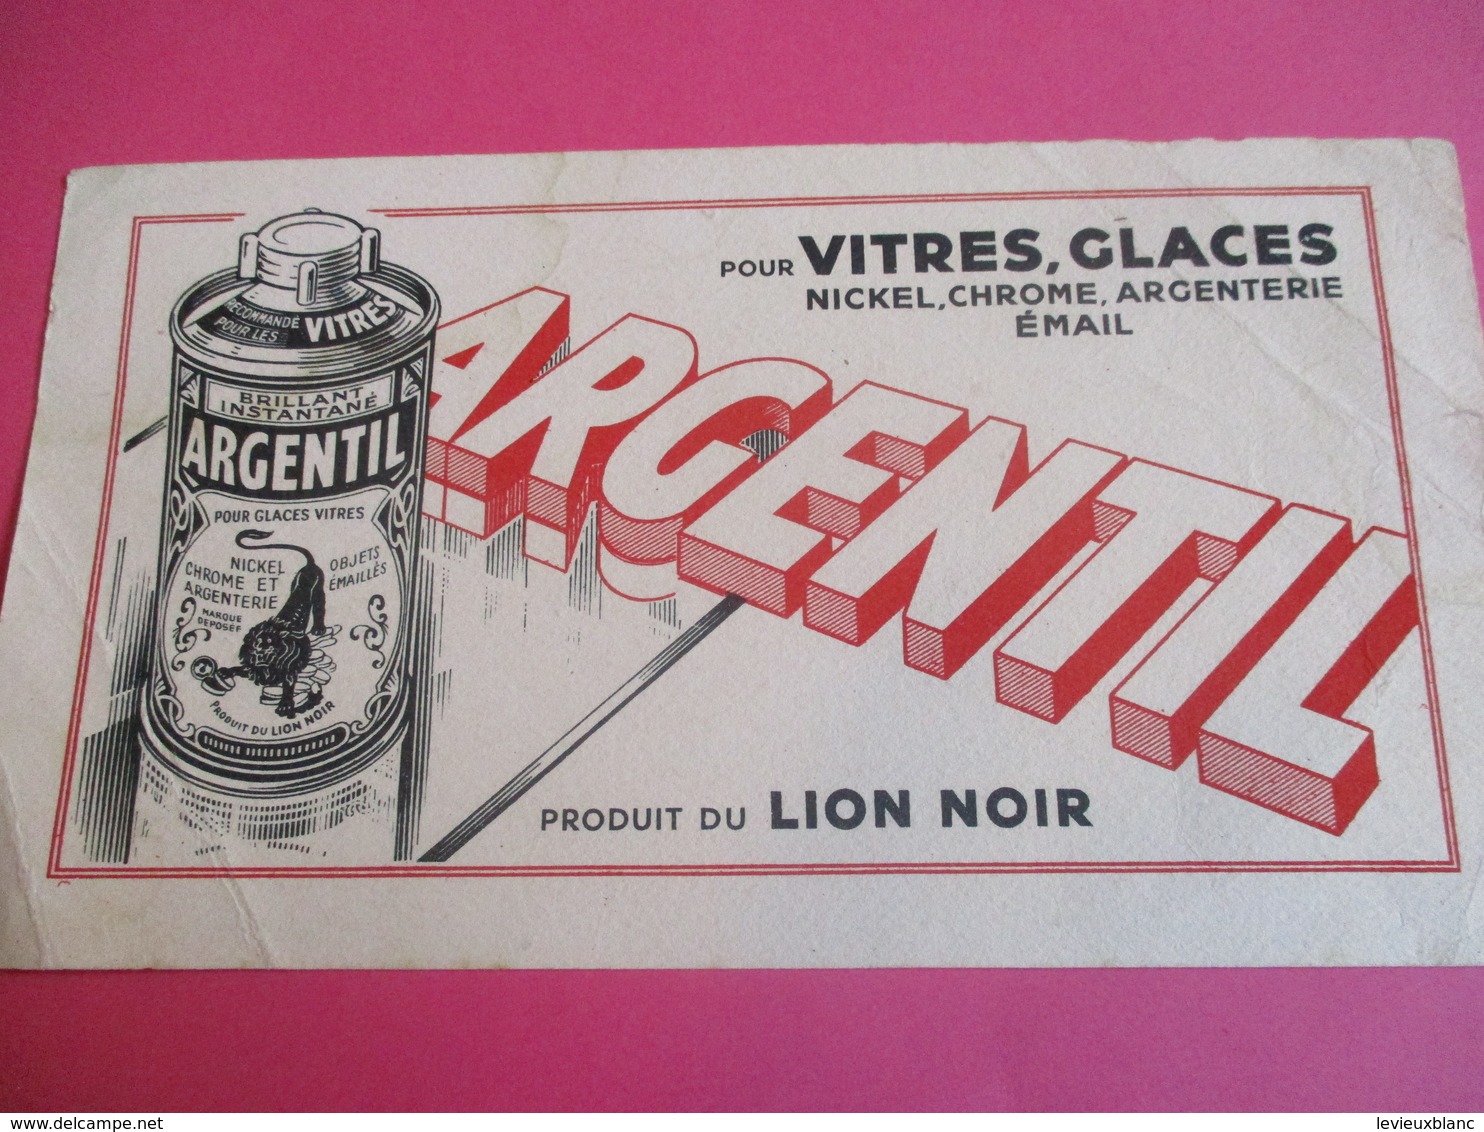 2 Buvards /Nickel , Chrome Et Argenterie/ ARGENTIL/ Produit Du LION NOIR / Brillant Liquide/ Vers 1940-1960    BUV328 - Produits Ménagers